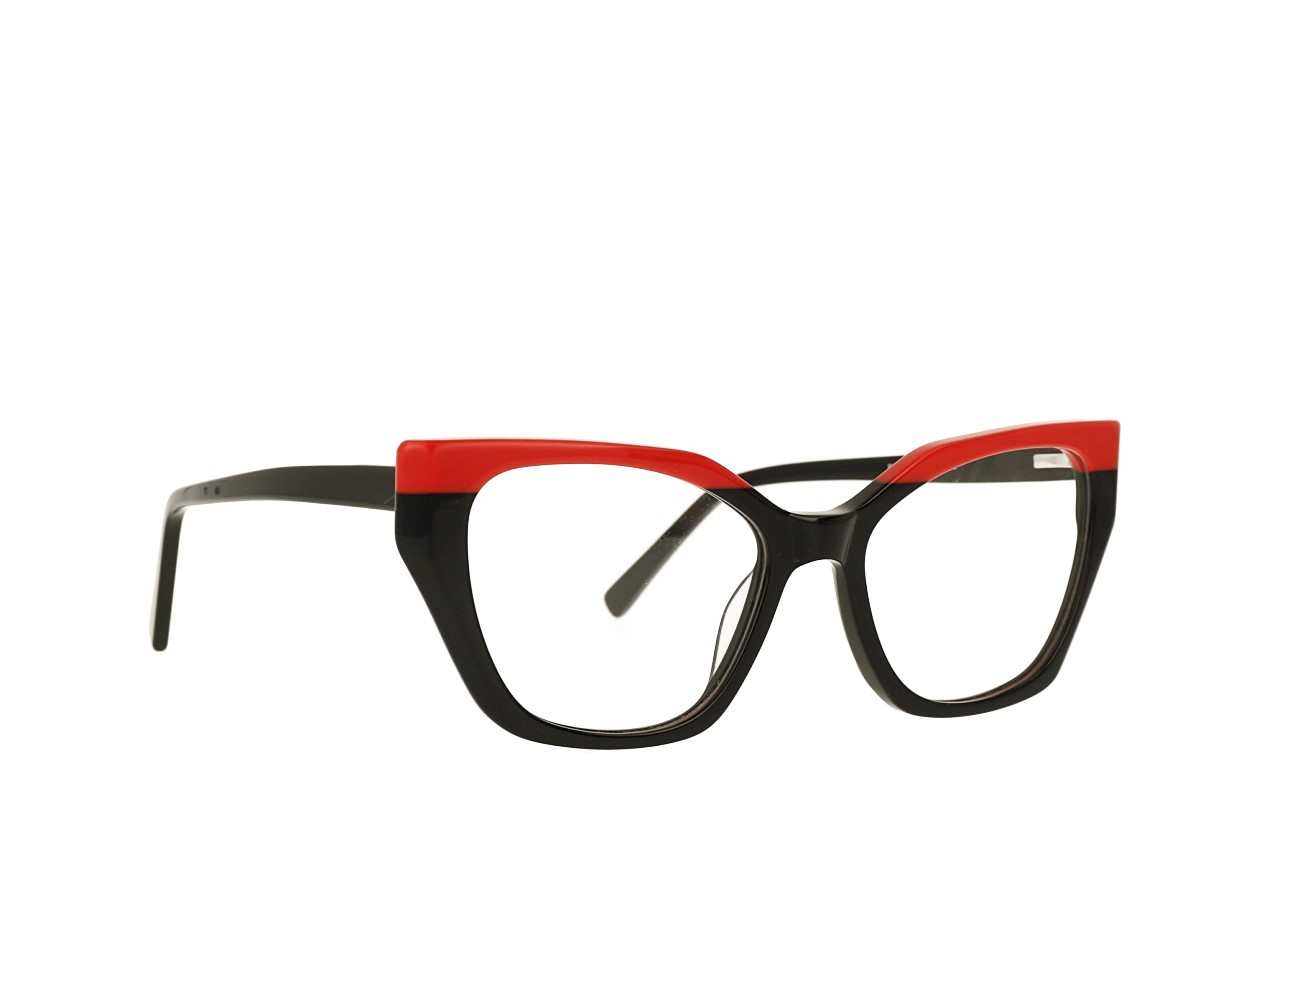 53 Size Design Woman's Cat Eye Optical frame Acetate Eyeglasses Spring Hinge Eyewear